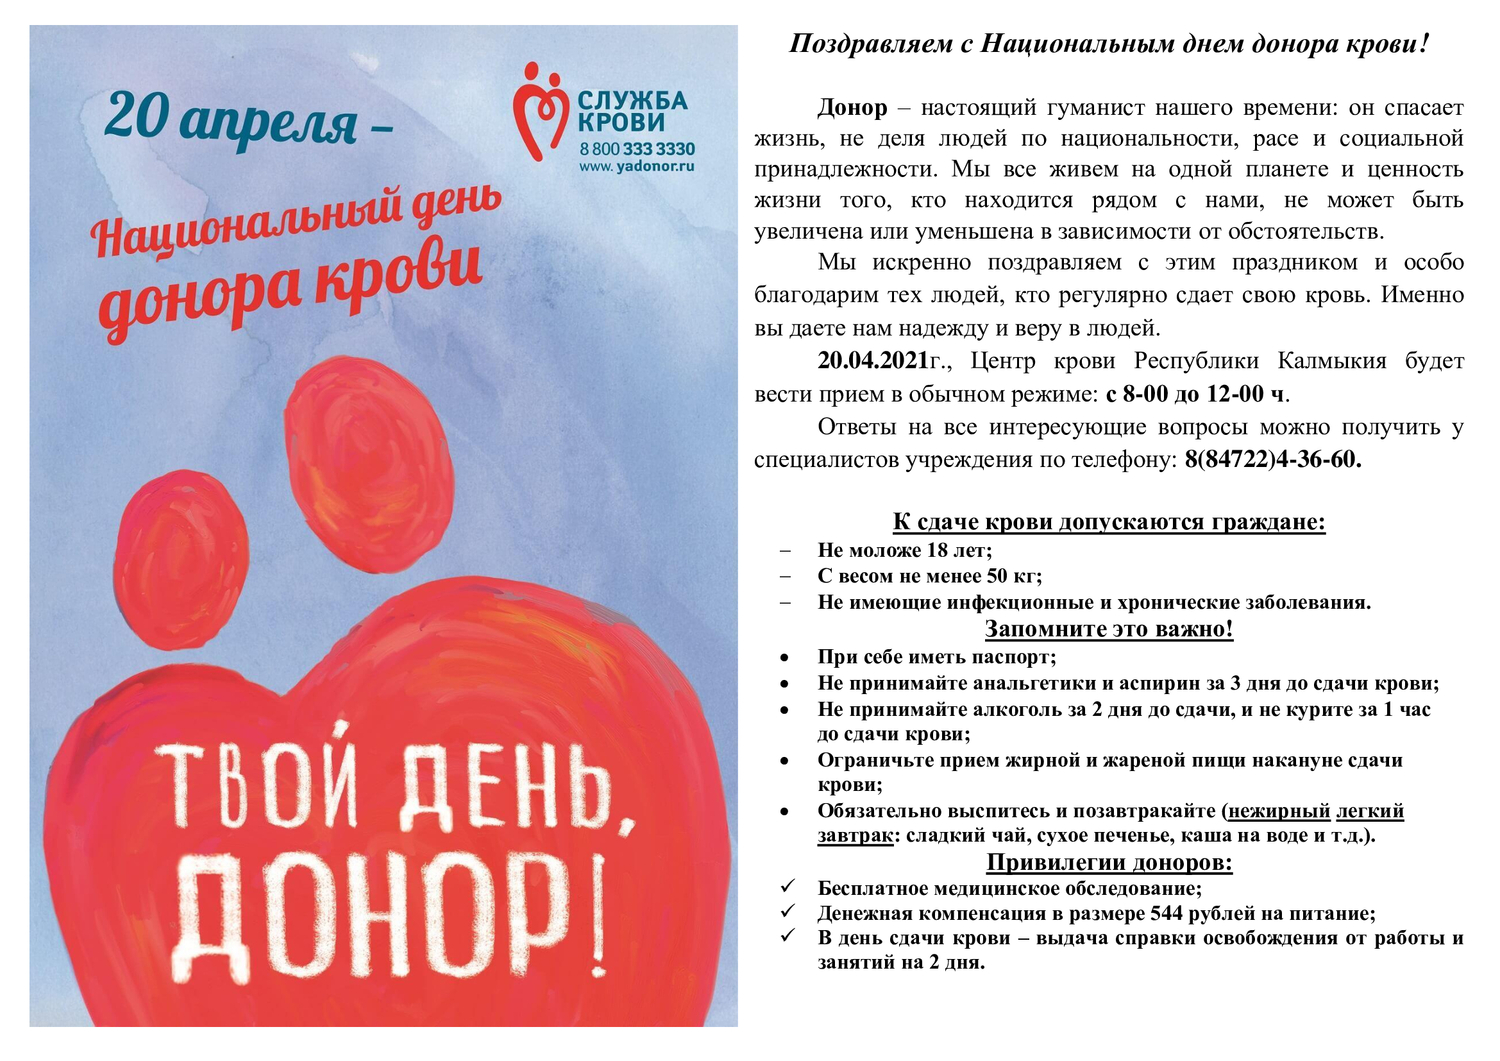 Донорство сегодня. День донора. Национальный день донора в России. С днем донора поздравление. 20 Апреля национальный день донора.